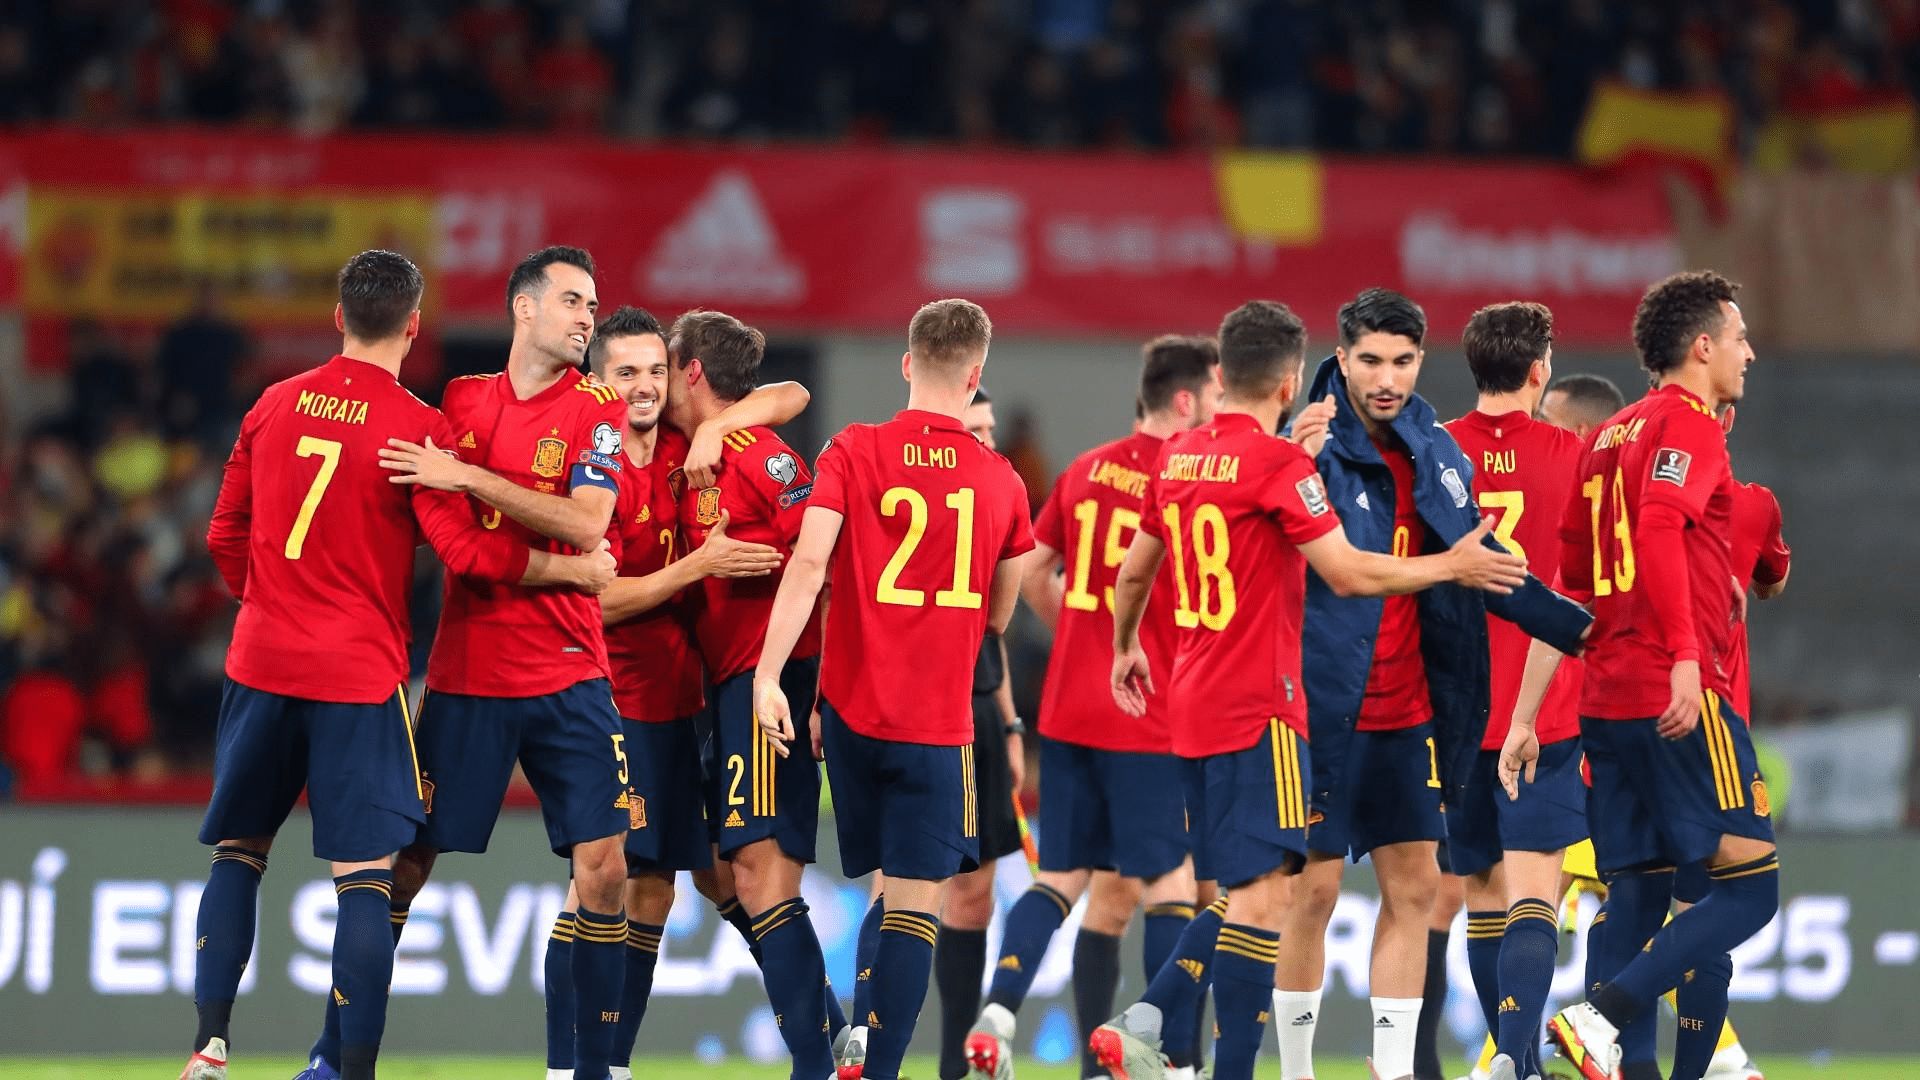 Tây Ban Nha vs Ý TRỰC TIẾP: Trong nỗ lực lọt vào Chung kết vào Chủ nhật tuần này, Tây Ban Nha sẽ đối đầu với Ý ở bán kết UEFA Nations League 